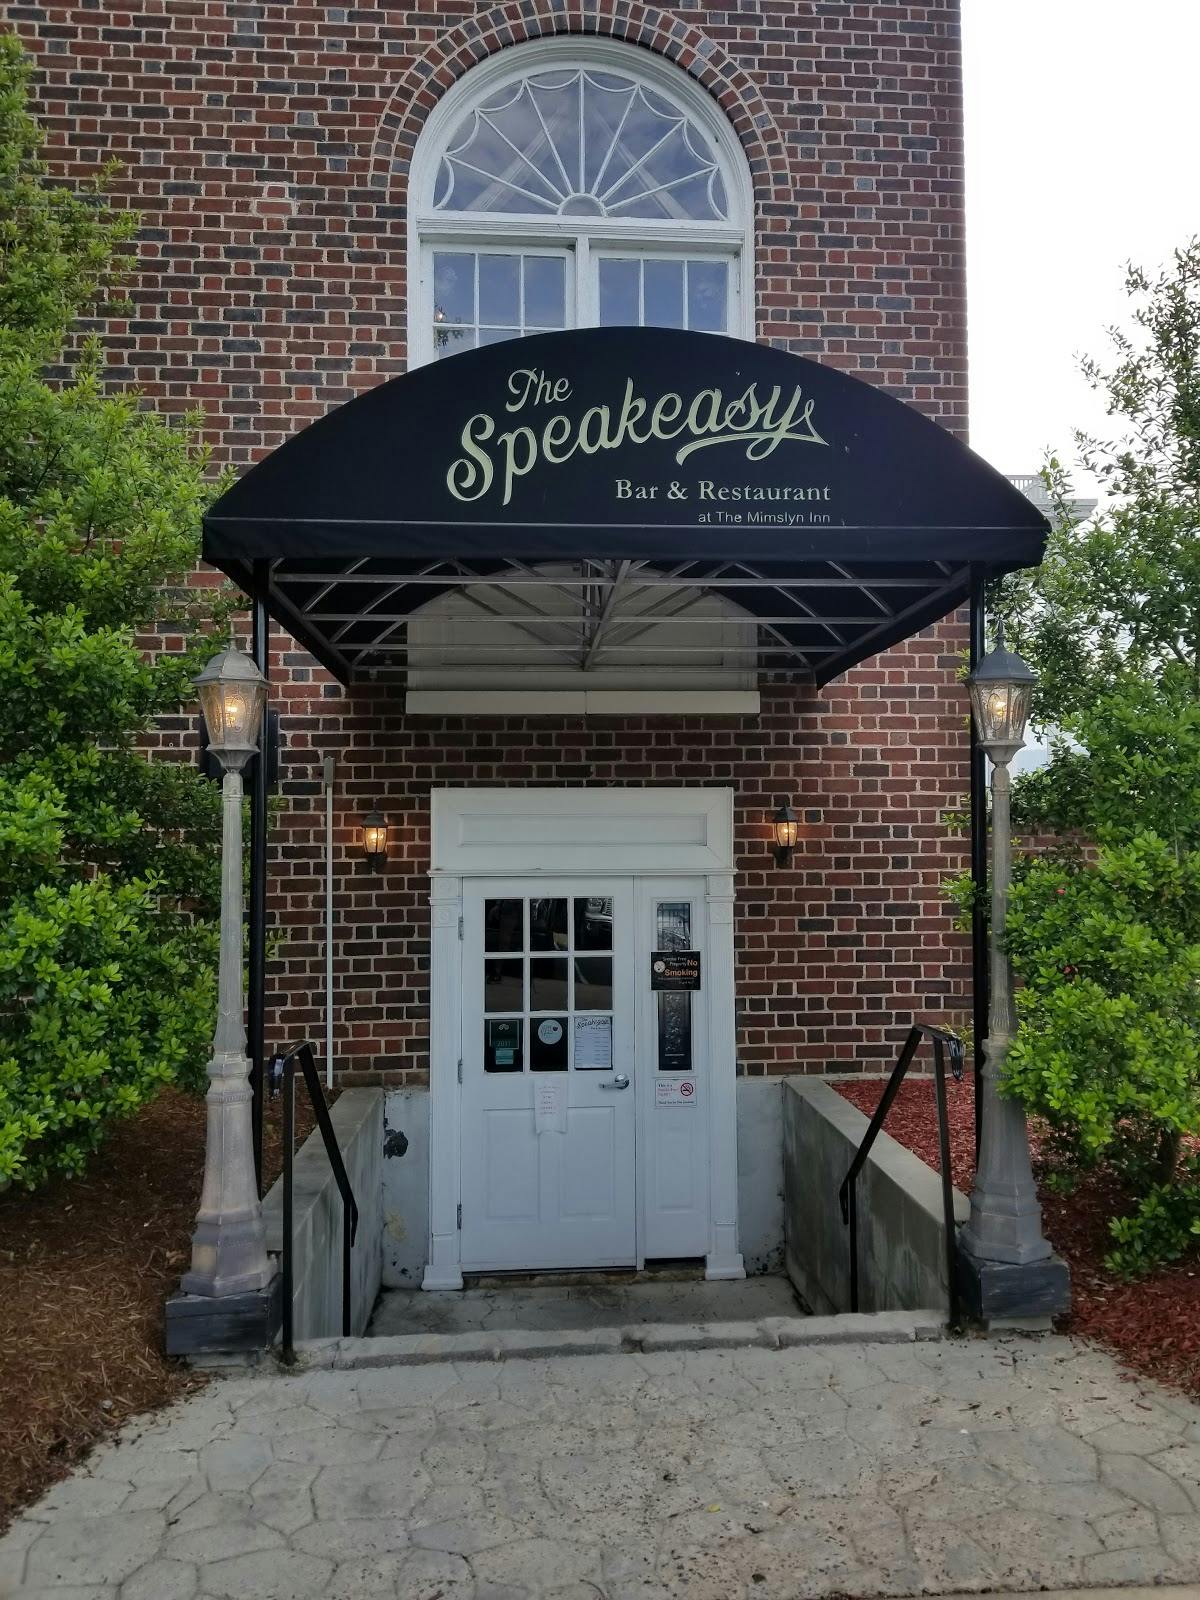 Image - The Speakeasy Bar & Restaurant